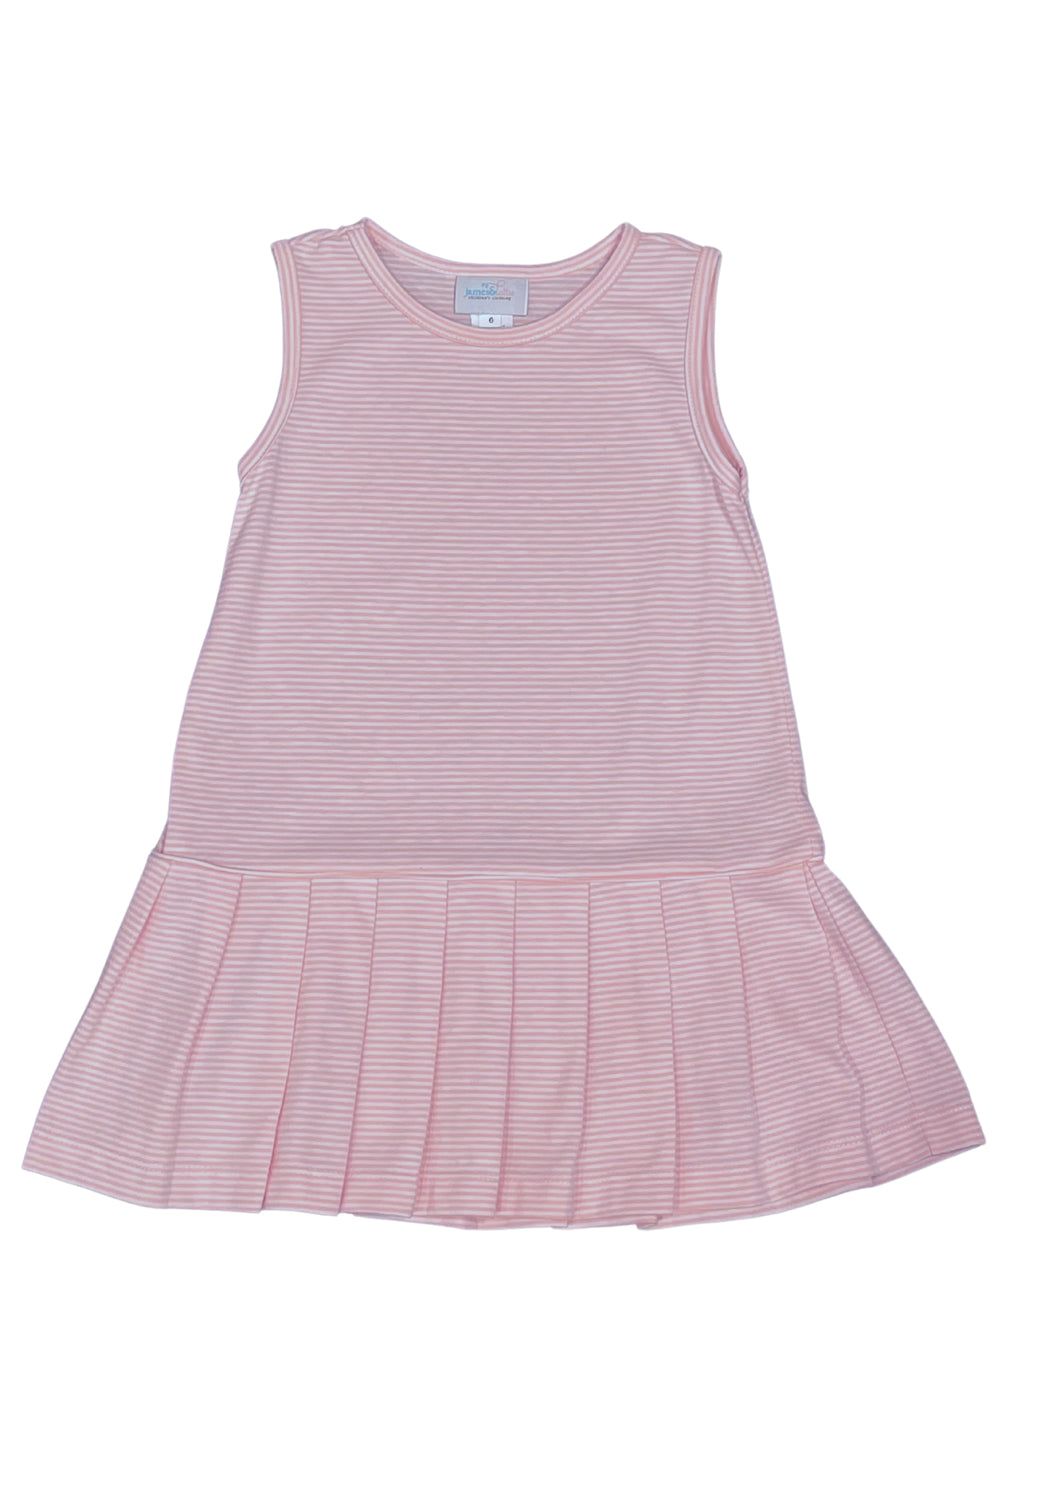 Vivi Tennis Dress, Pink Stripe